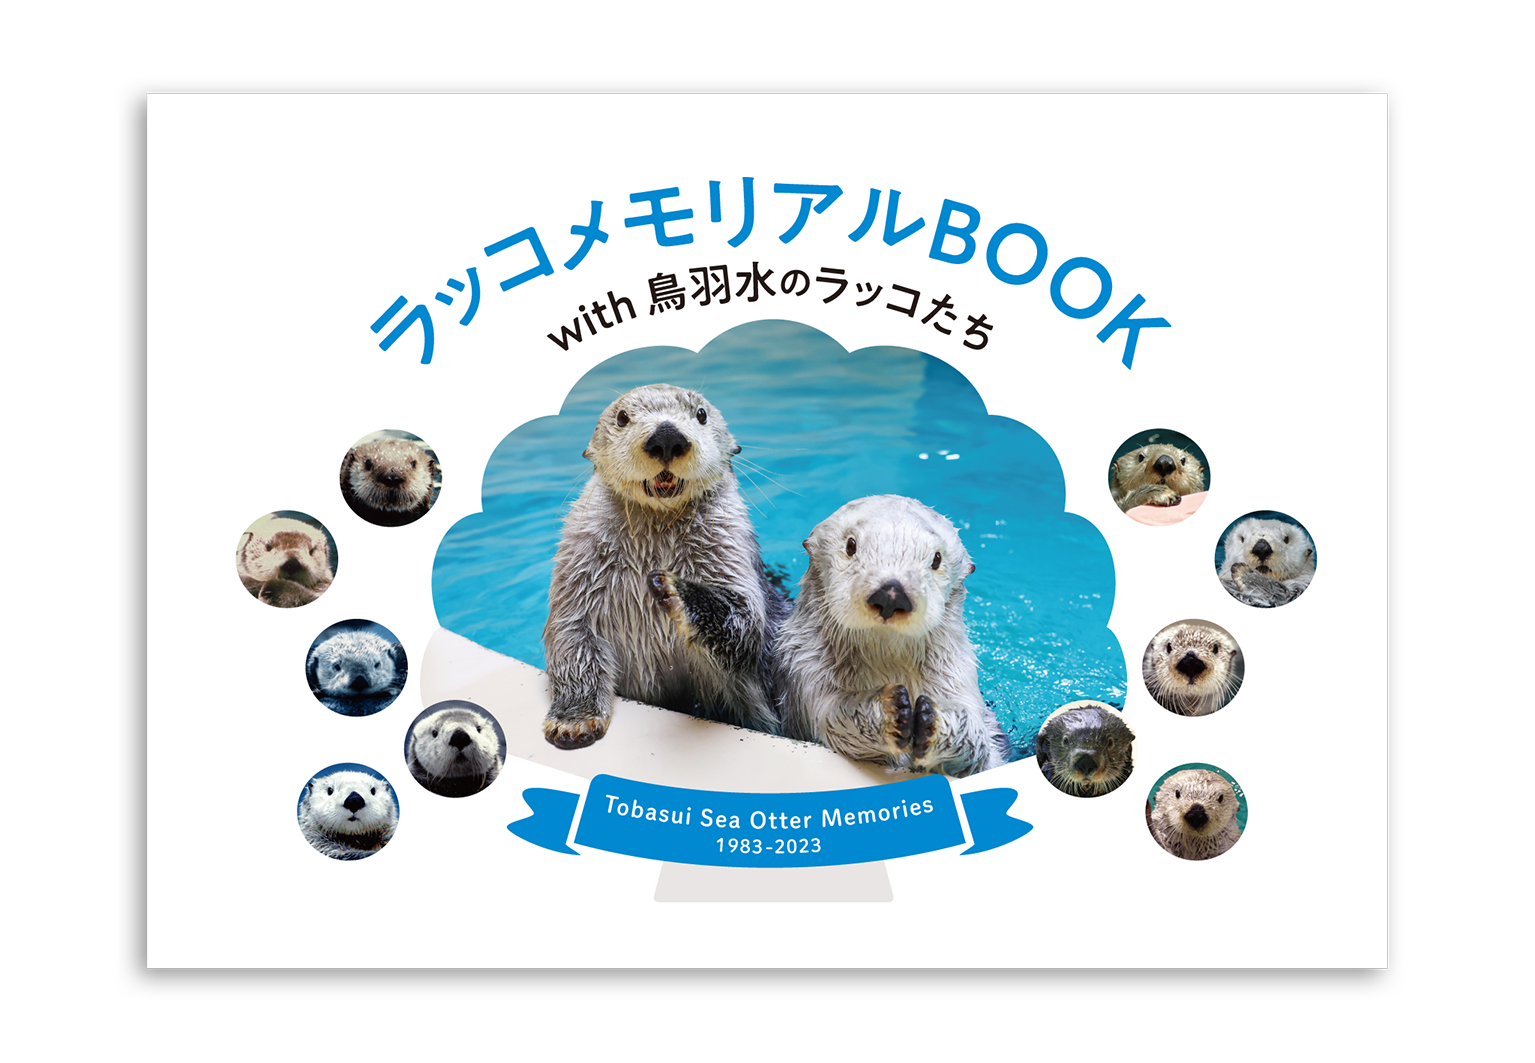 ラッコメモリアルBOOK with 鳥羽水のラッコたち – 鳥羽水族館 